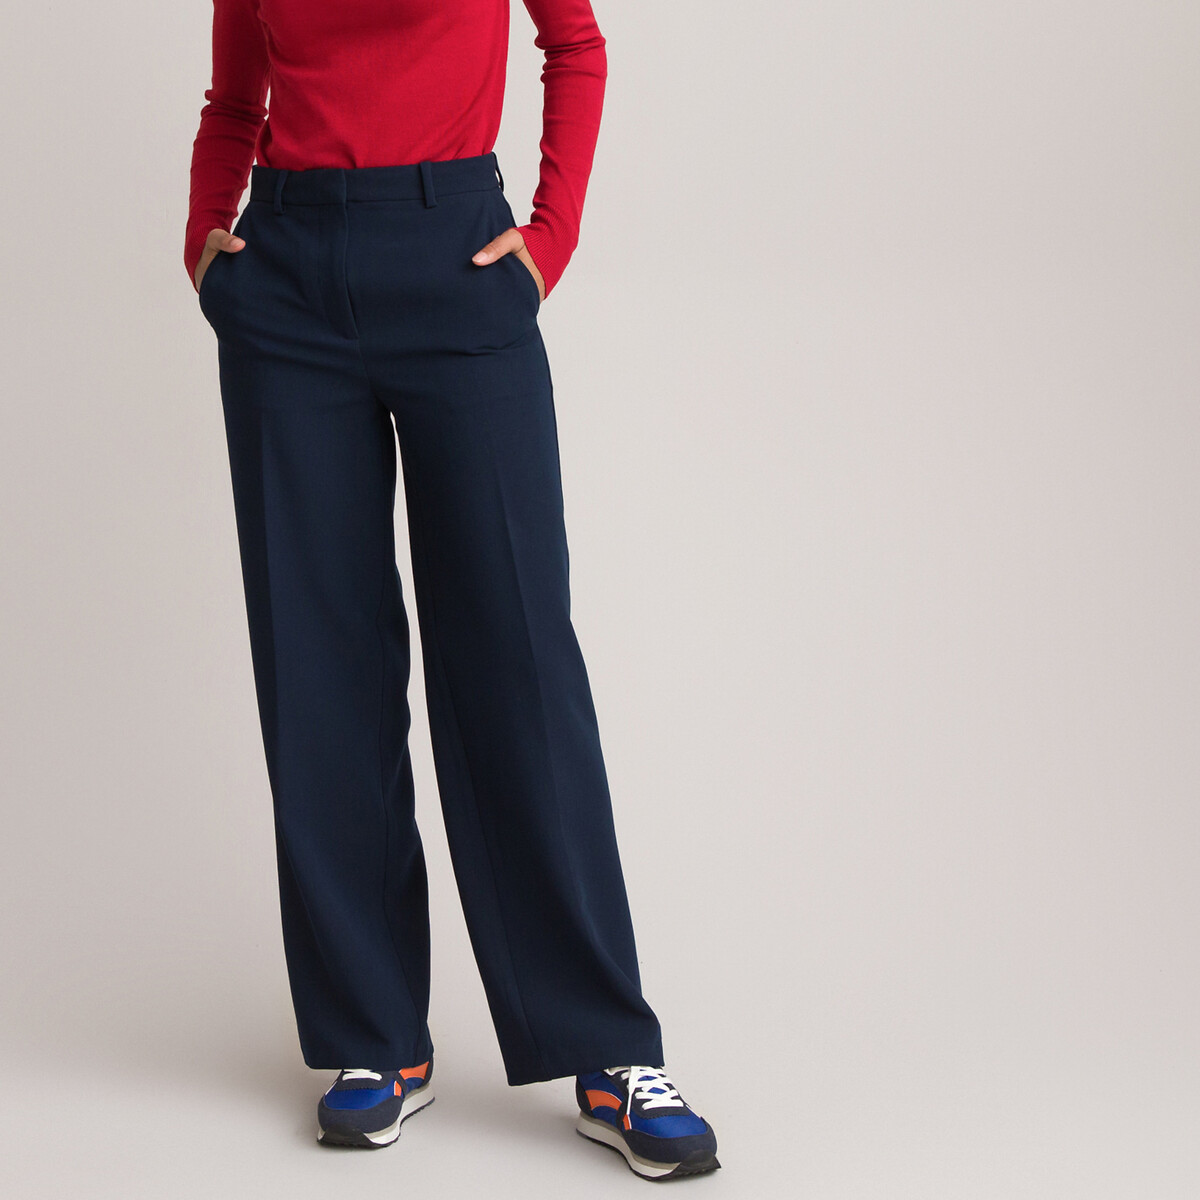 Red 42                  EU discount 72% Carola Chino trouser WOMEN FASHION Trousers Basic 